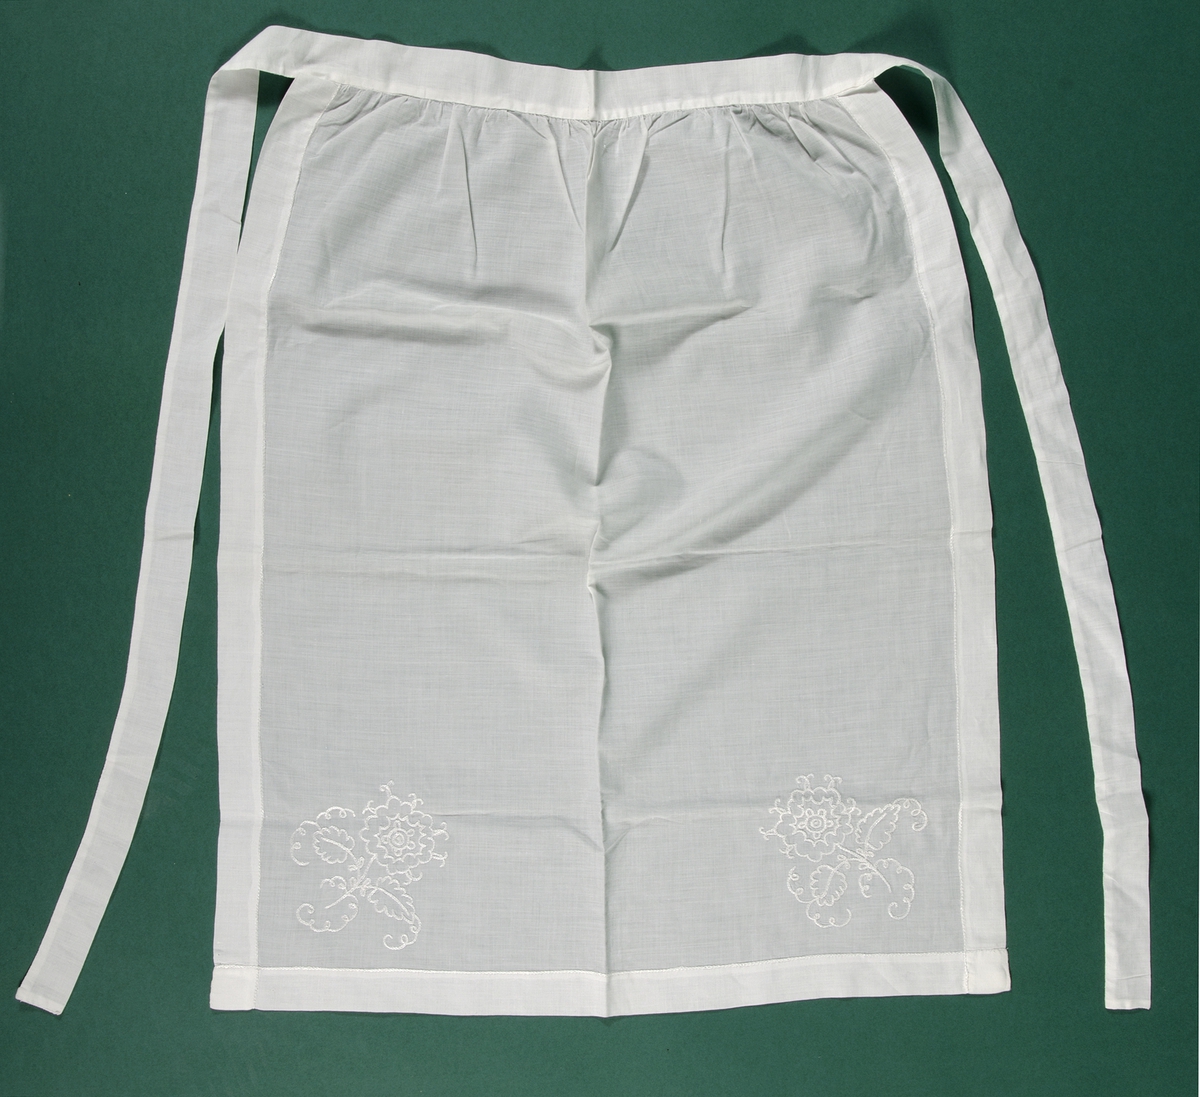 Förkläde, handsytt av tunt vitt bomullstyg vävt i tuskaft. Förklädet är fållat runt om med kedjestygn och i de nedre hörnen är blommor broderade med kedjestygn. Kedjestygnen är sydda med vitt silkesgarn.